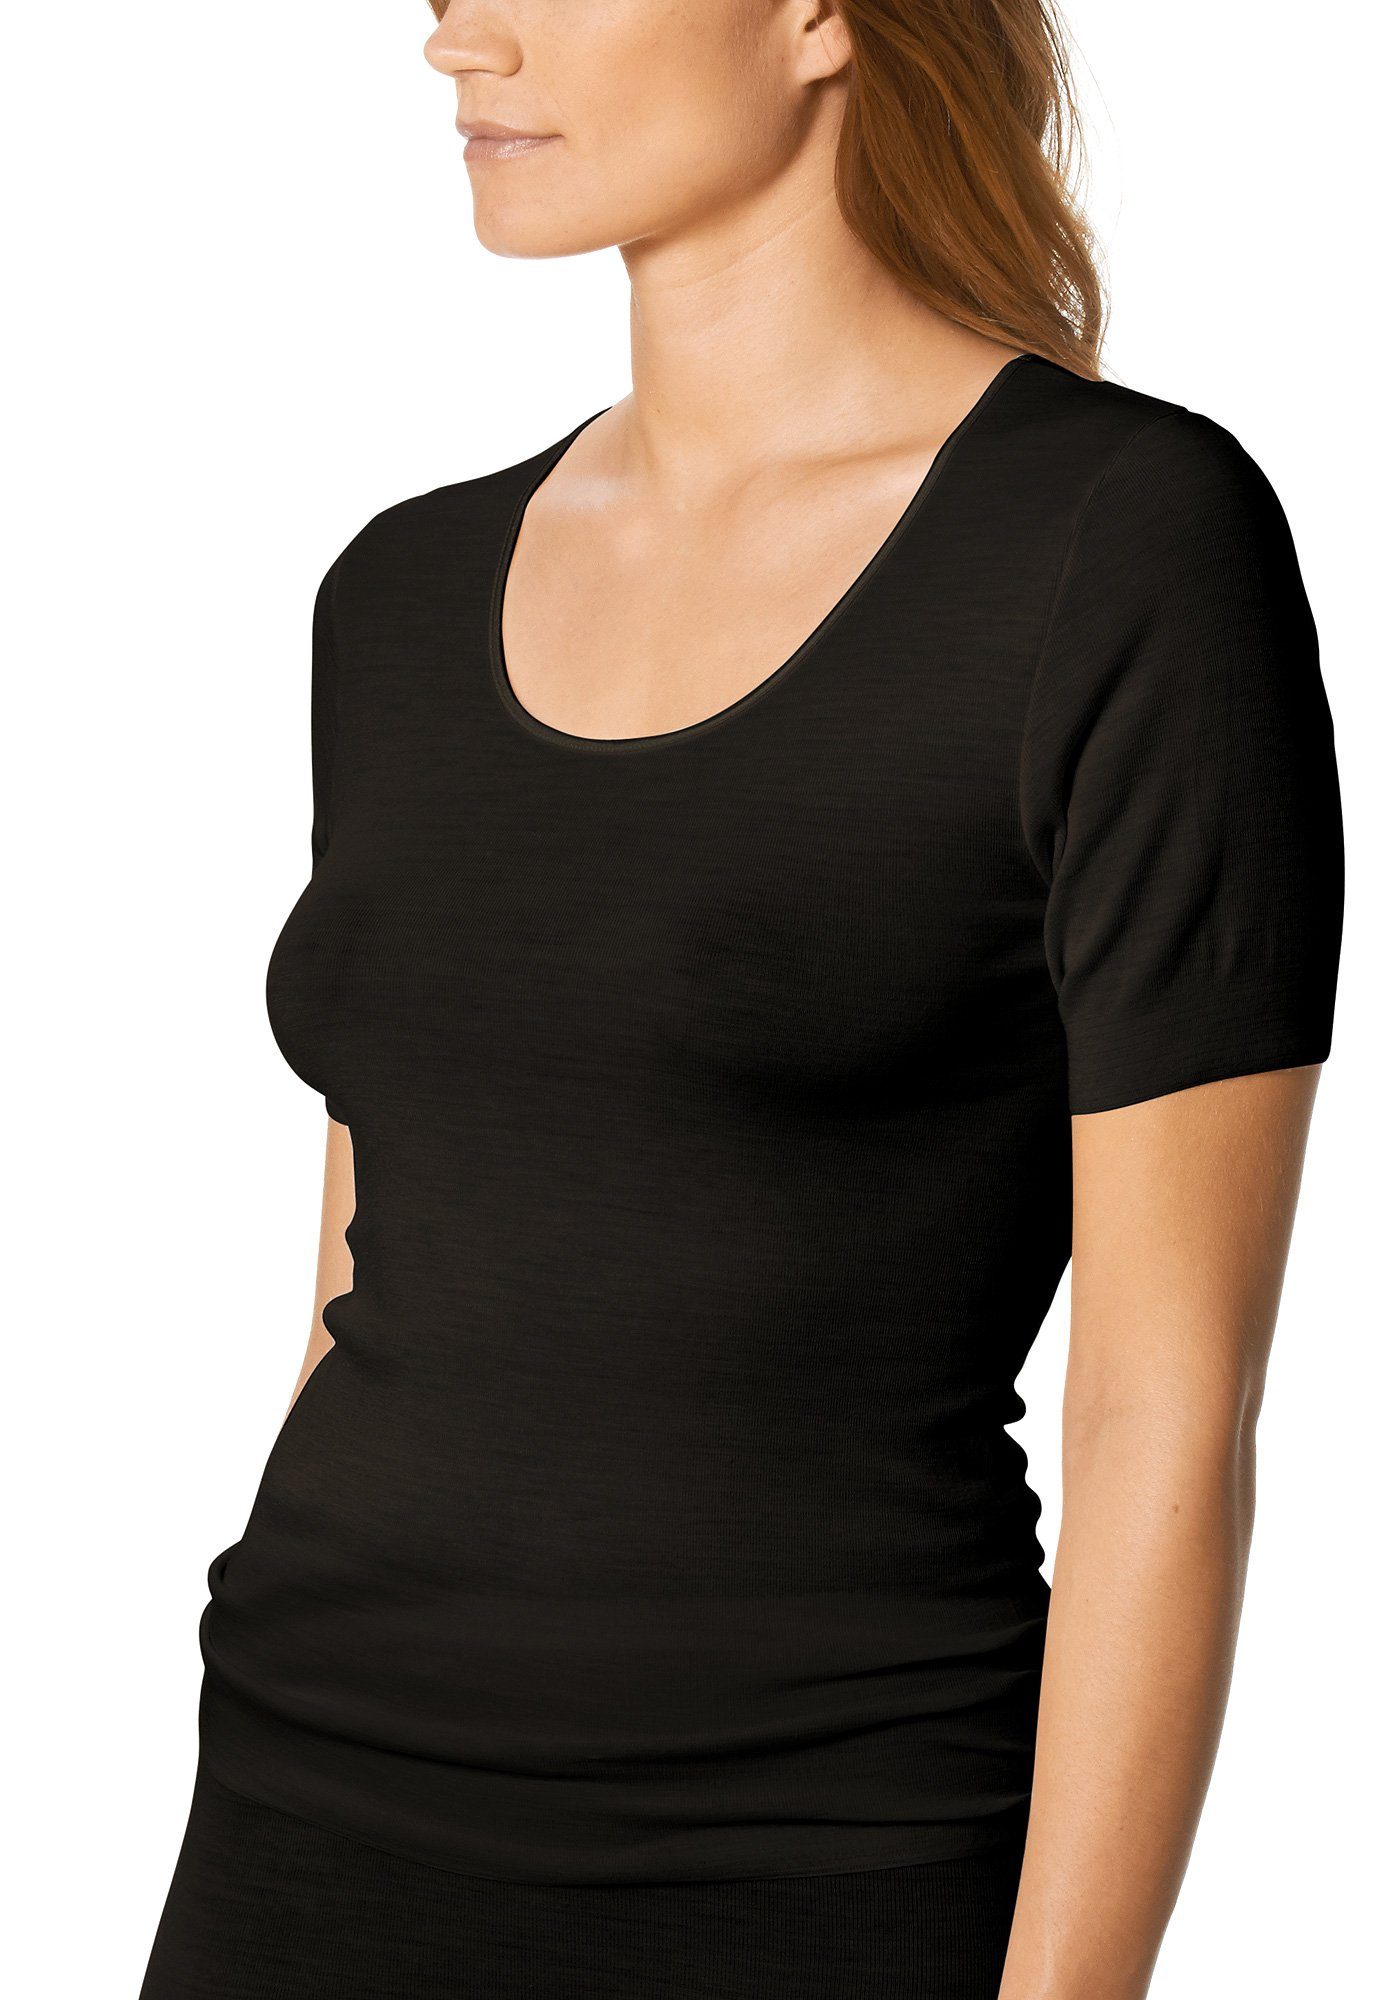 Stück, Serie (1 Stück) 1-St., Mey wärmend Thermounterhemd Mey Exquisite 66576 Shirt 1 schwarz